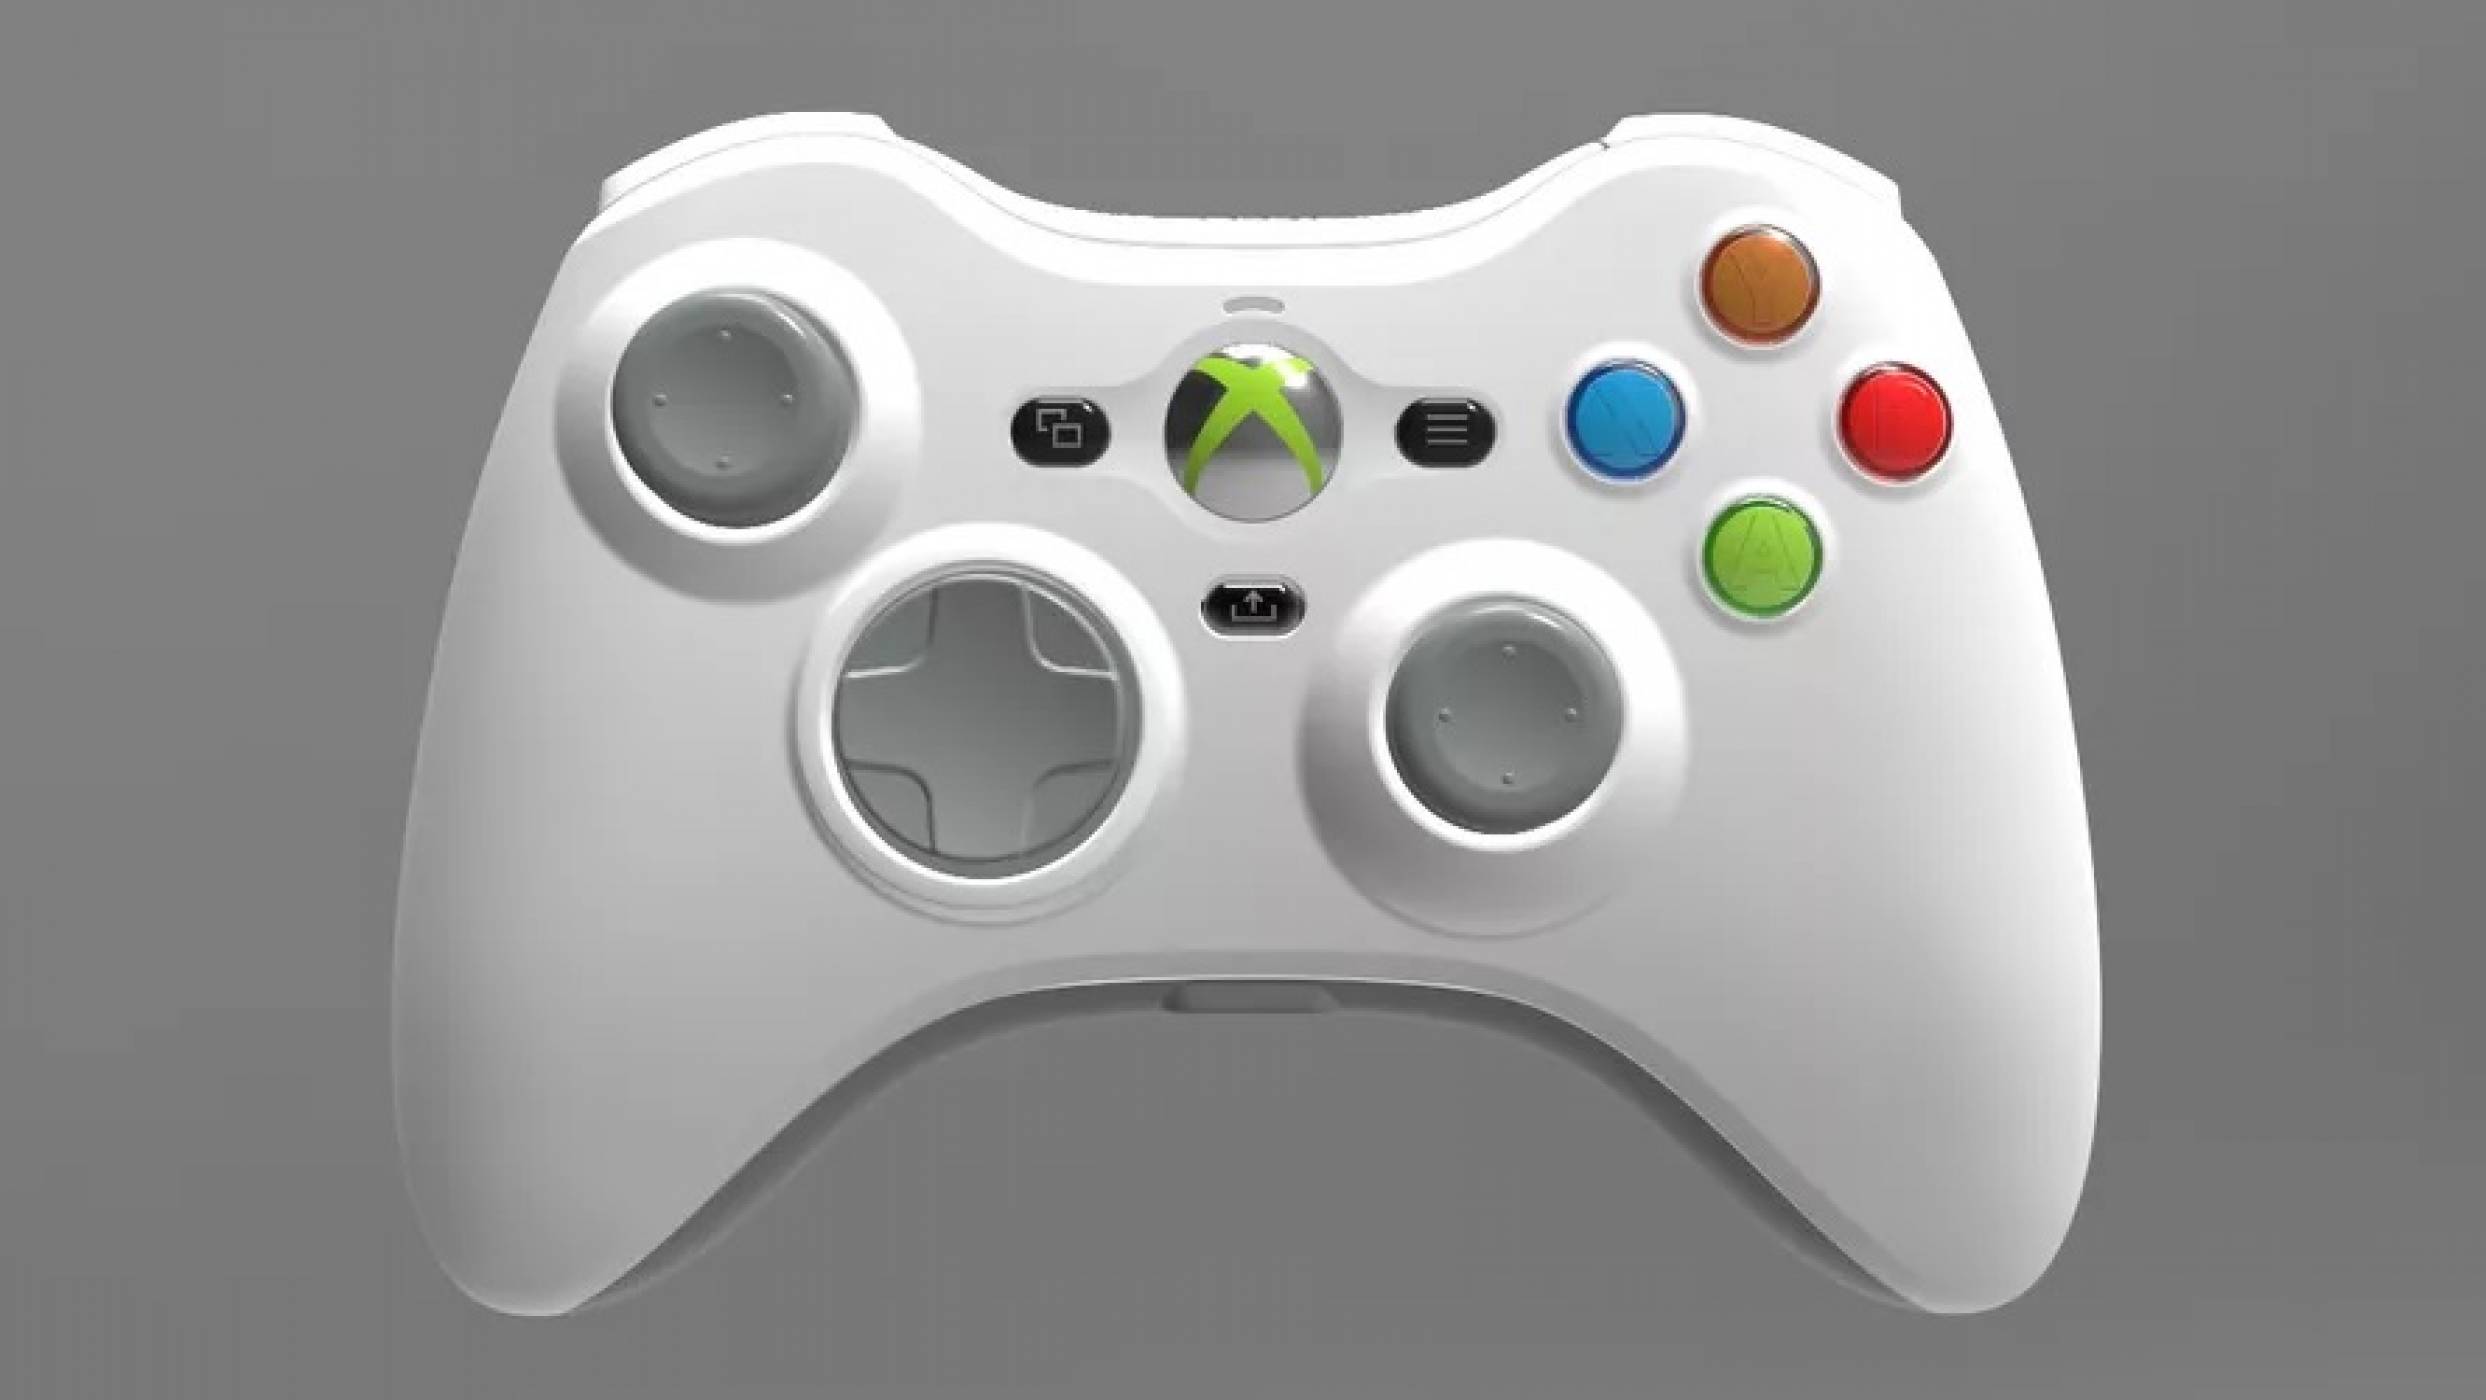 Това е официалната модерна версия на легендарния Xbox 360 контролер